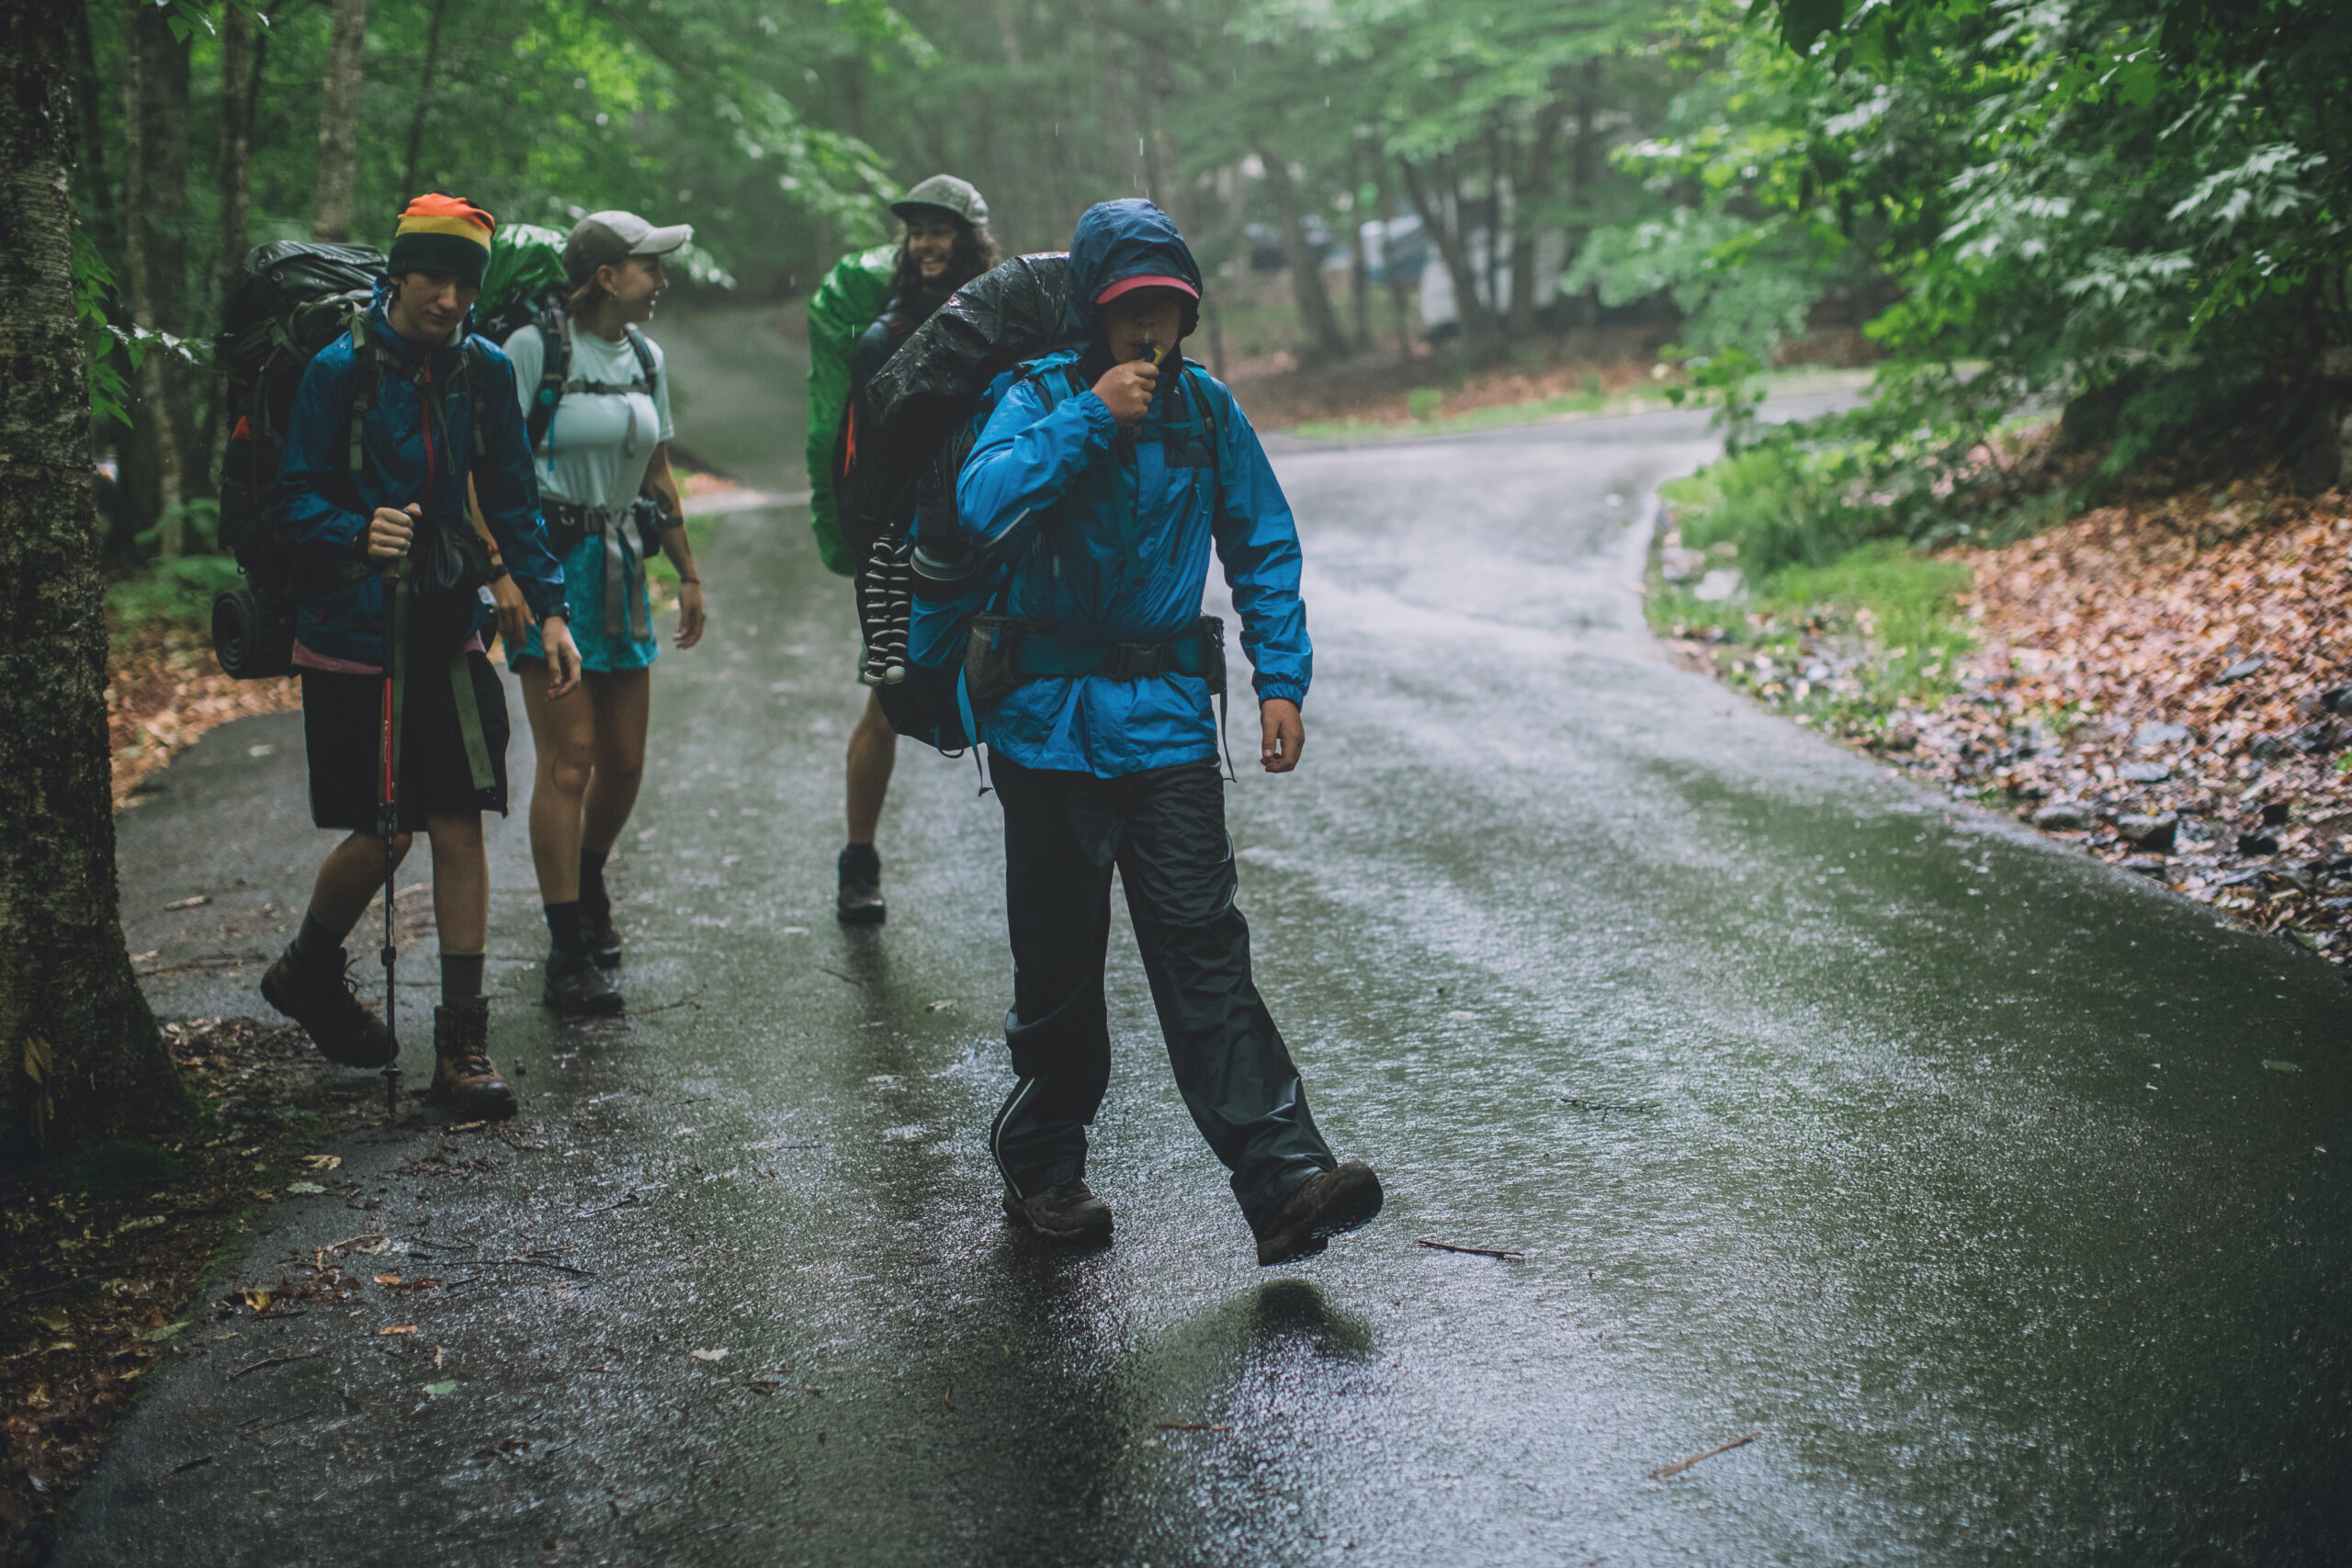 Hikers on a rainy trail.